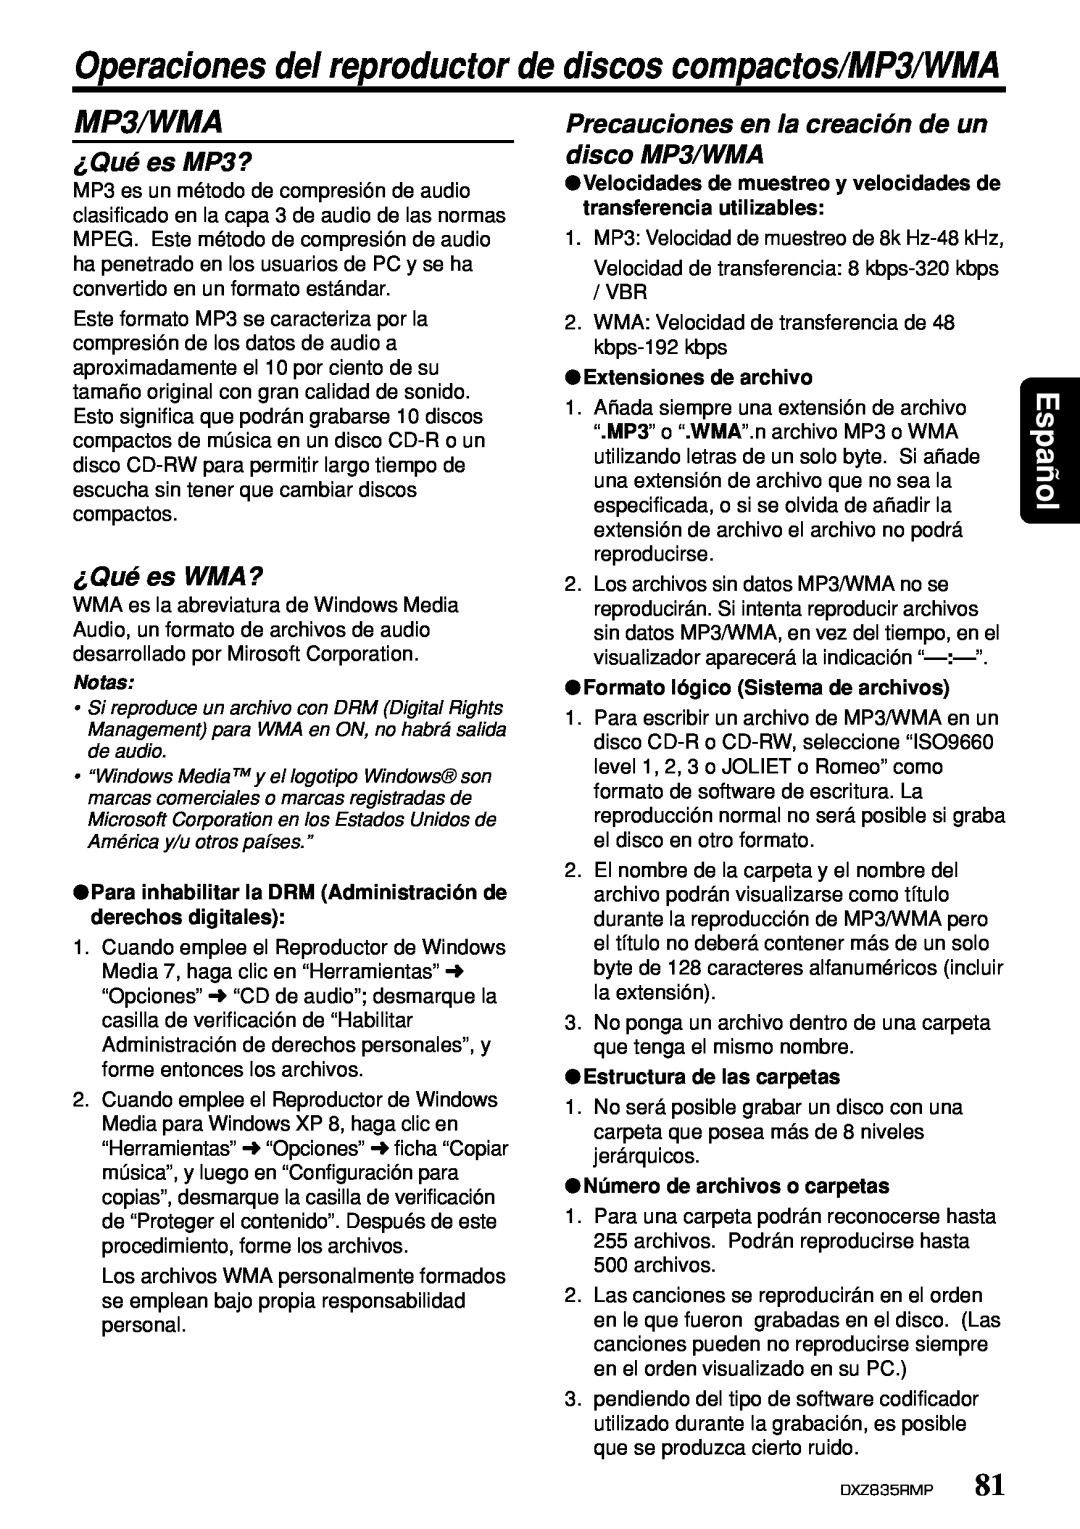 Clarion DXZ835MP owner manual ¿Qué es MP3?, Precauciones en la creación de un disco MP3/WMA, ¿Qué es WMA?, Español 